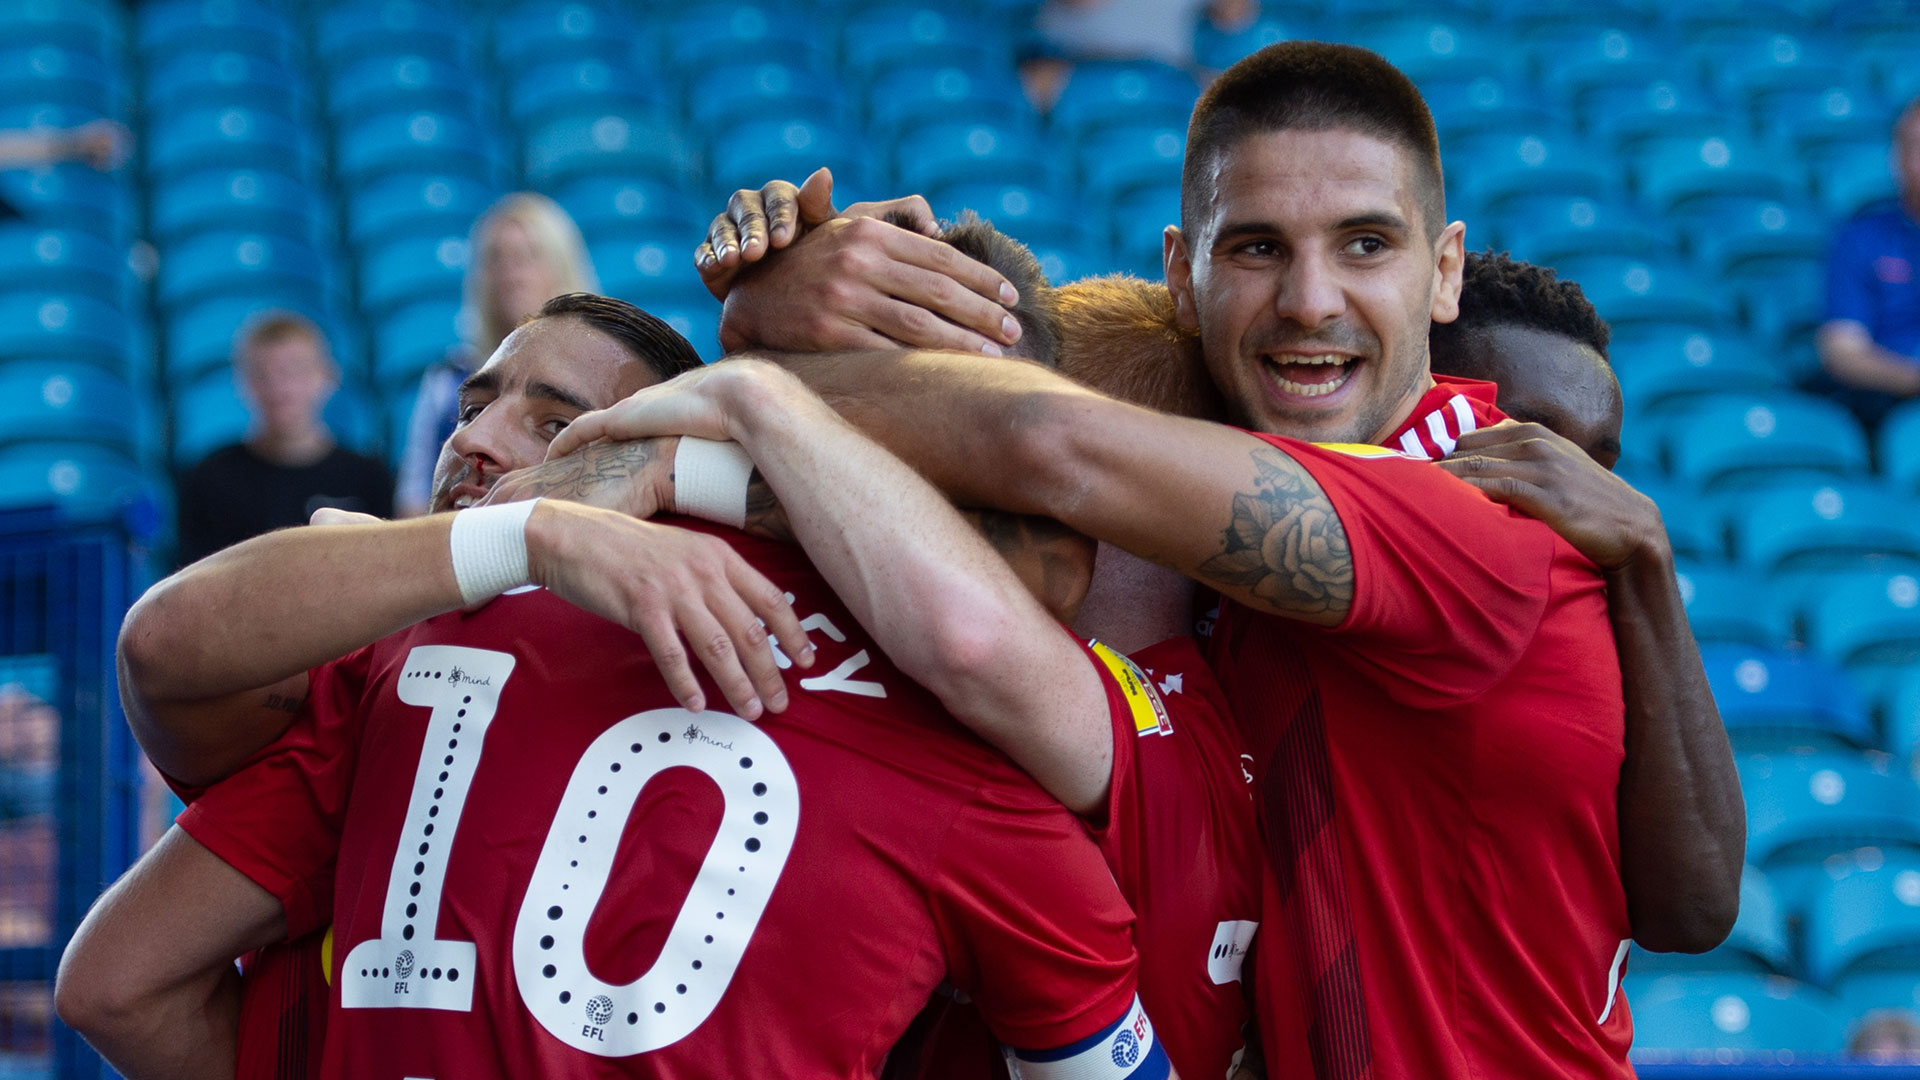 Cardiff City 2-1 Nottingham Forest: Jordan Hugill hits debut goal